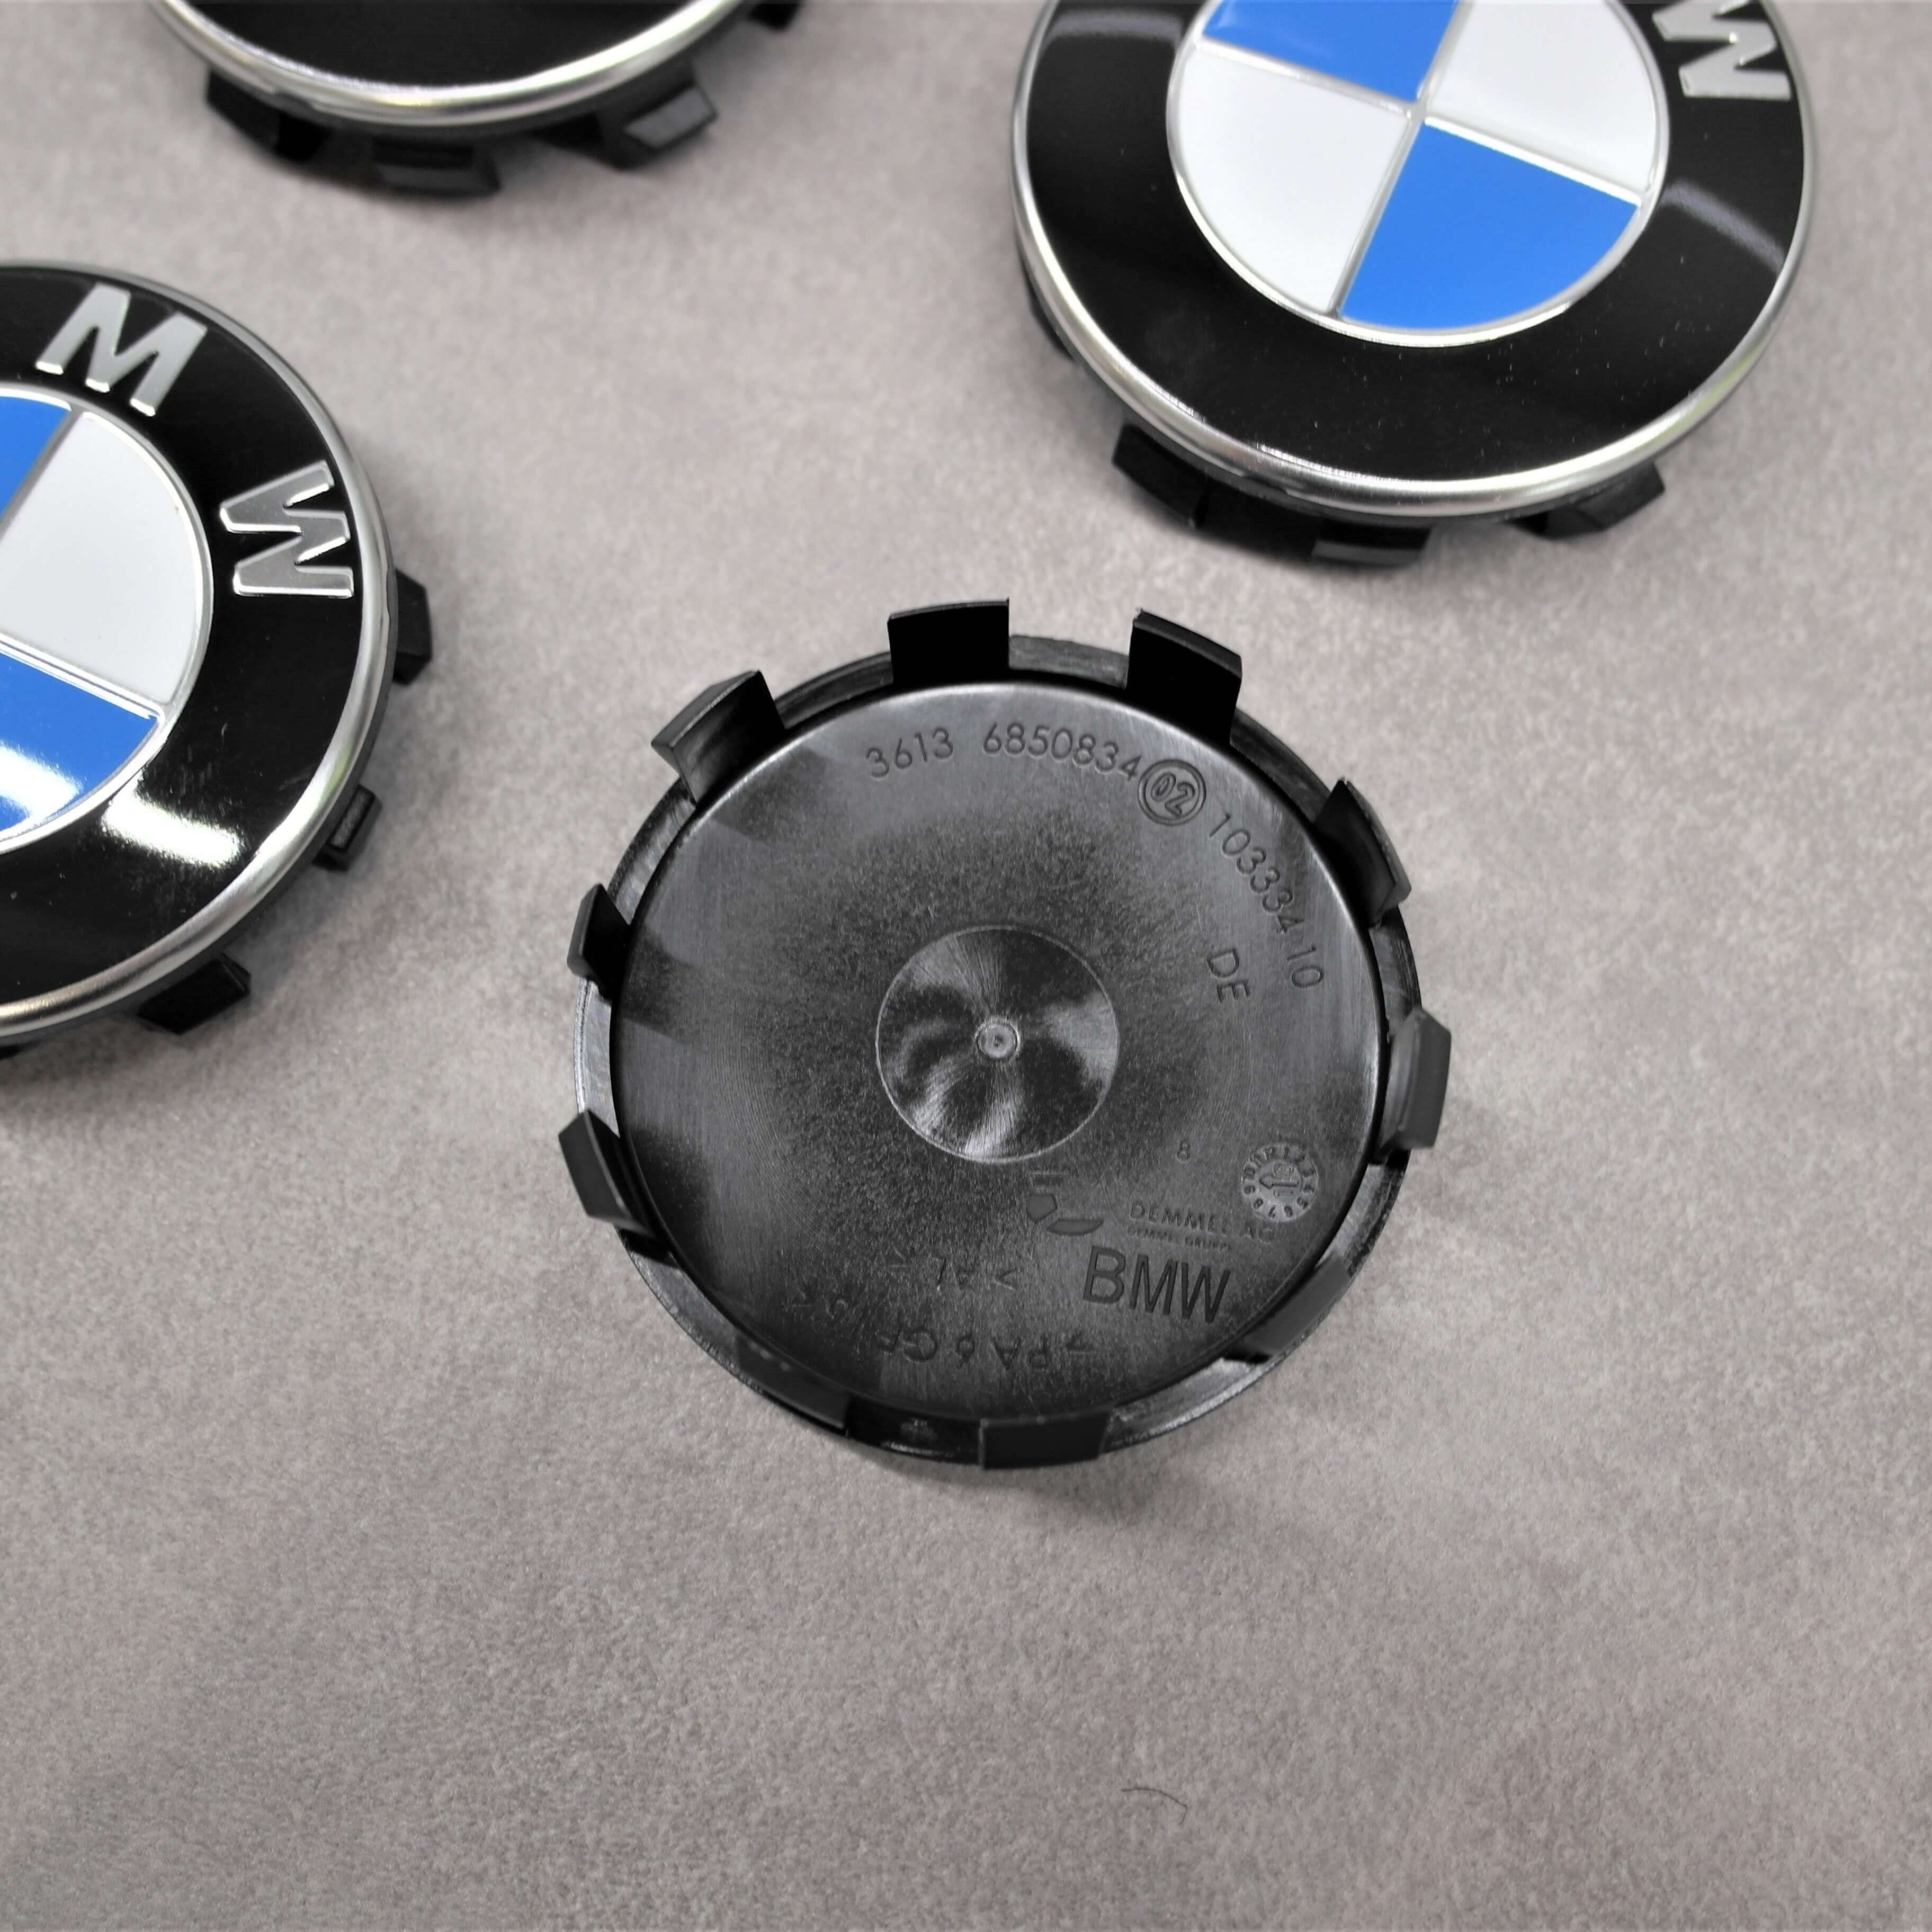 BMW Nabendeckel - jetzt in 55mm und 68mm erhältlich!